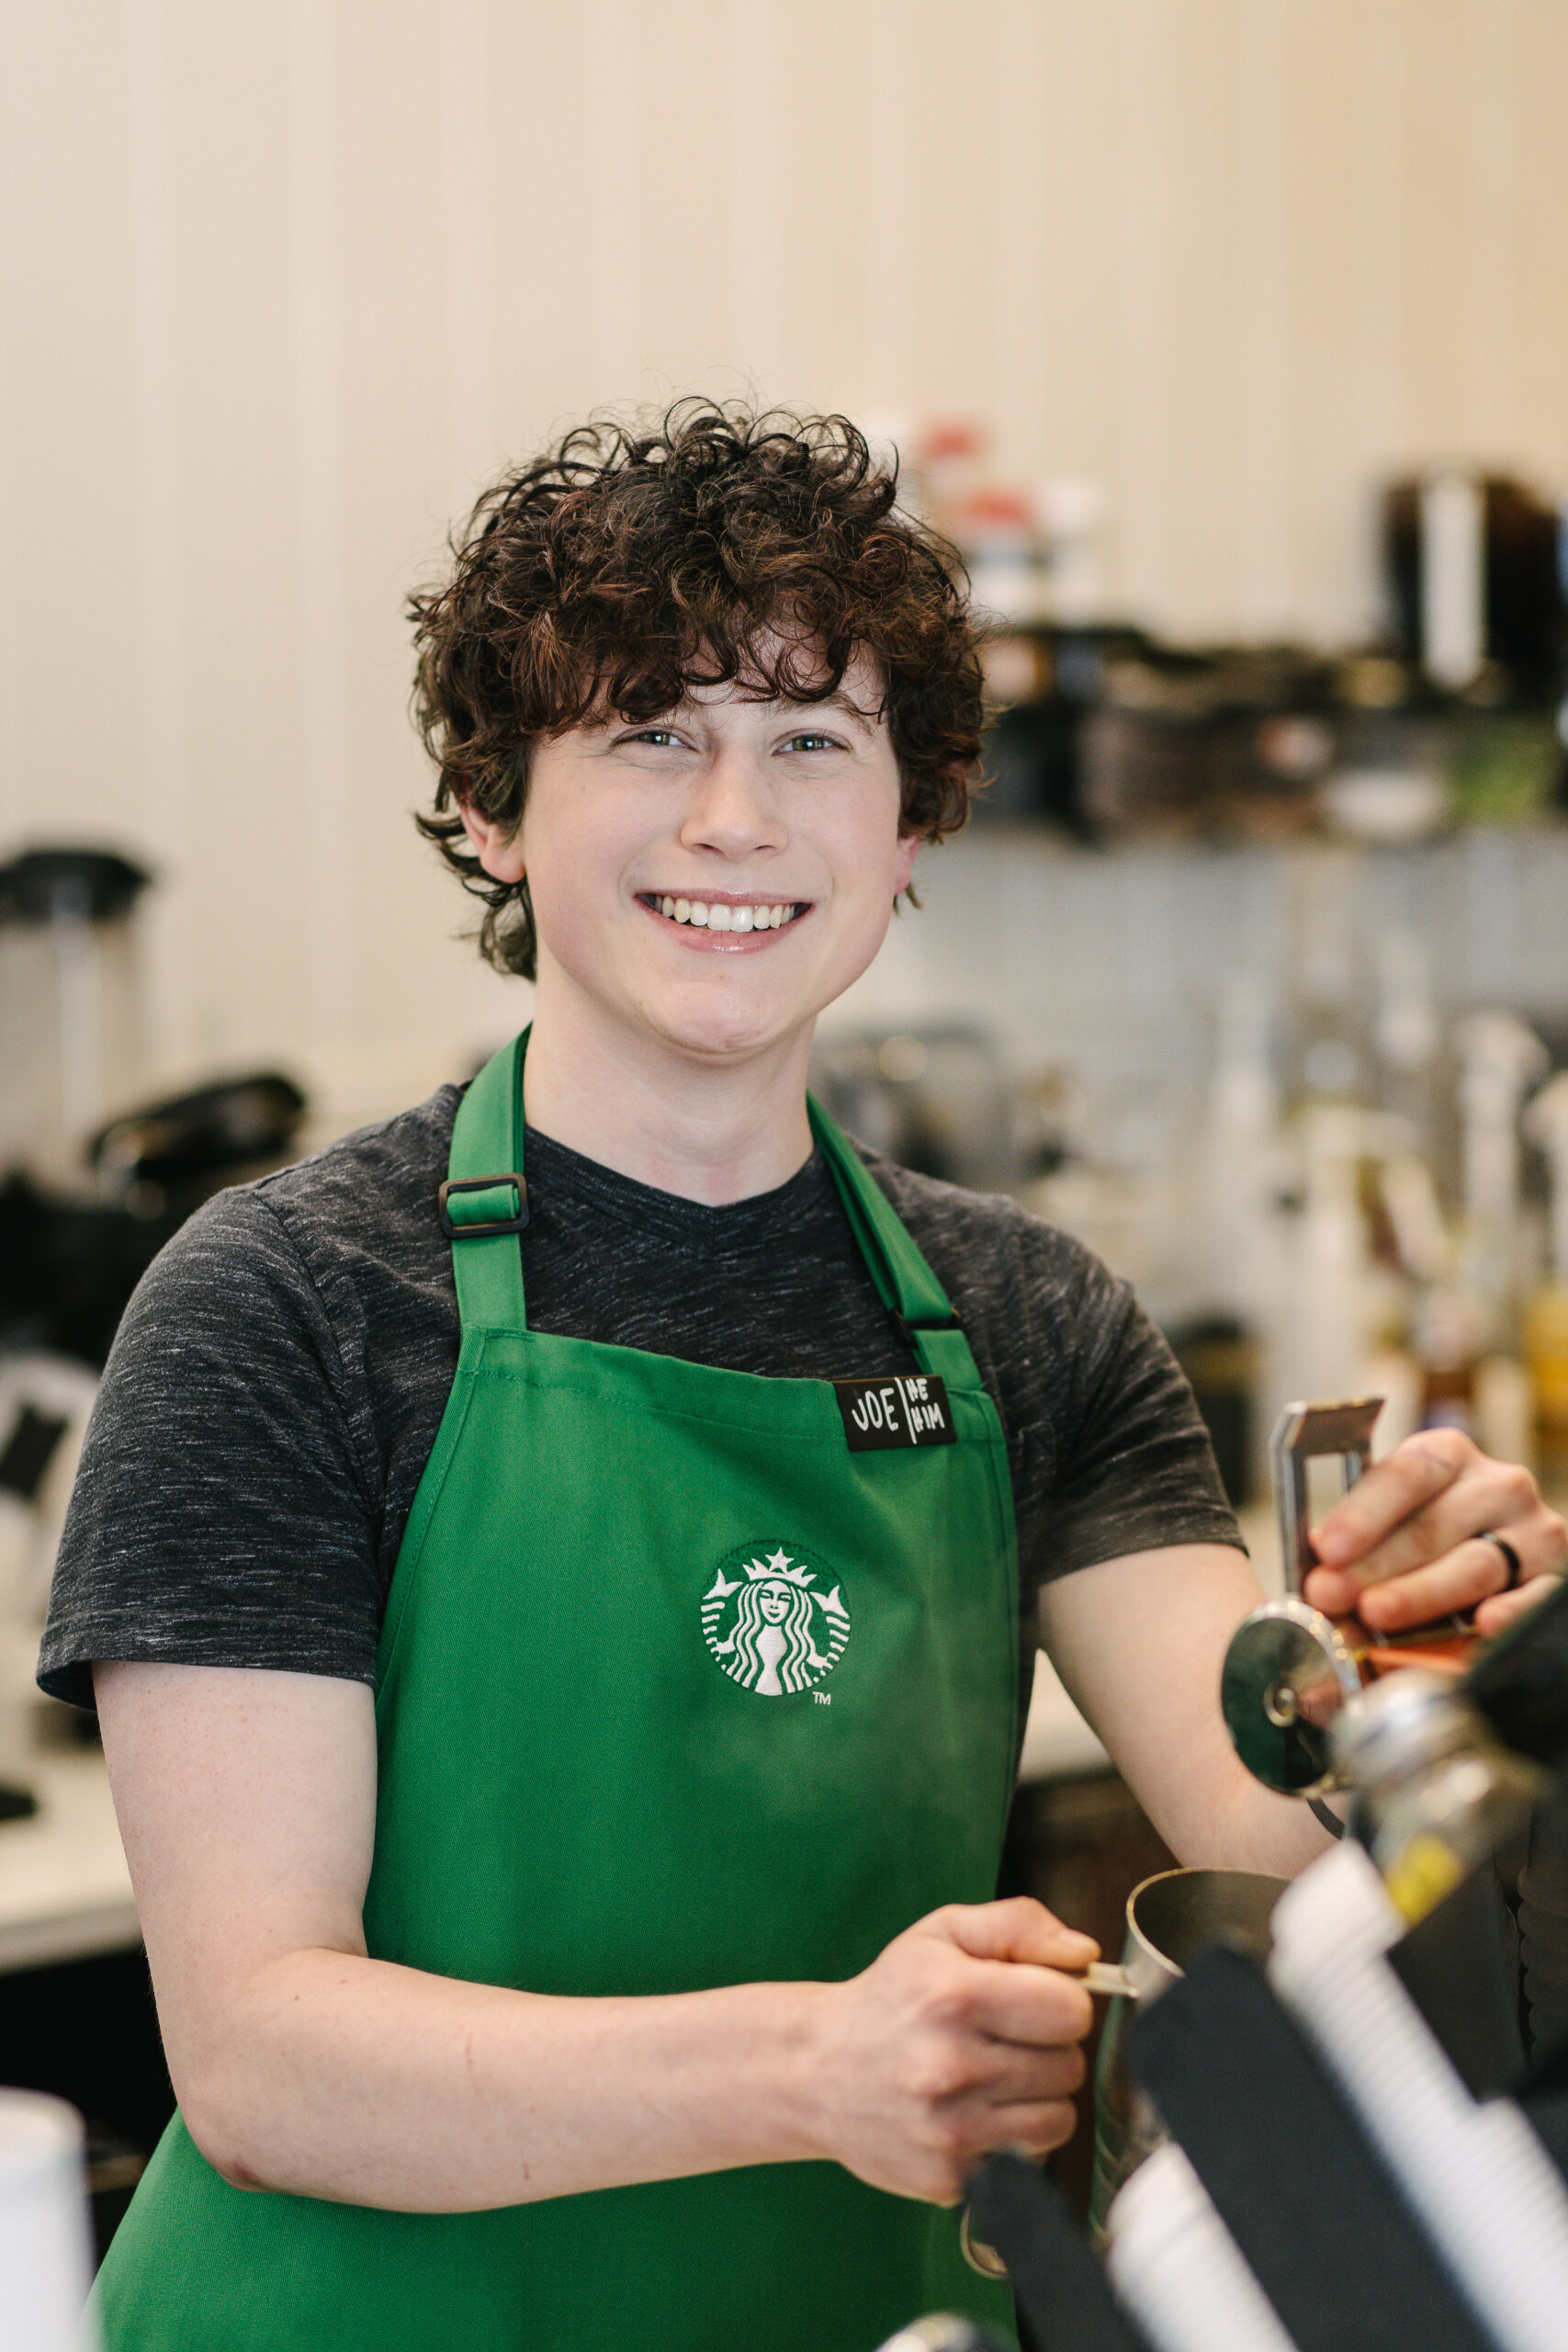 Une personne portant un tablier vert Starbucks se tient derrière le comptoir dans un magasin Starbucks.